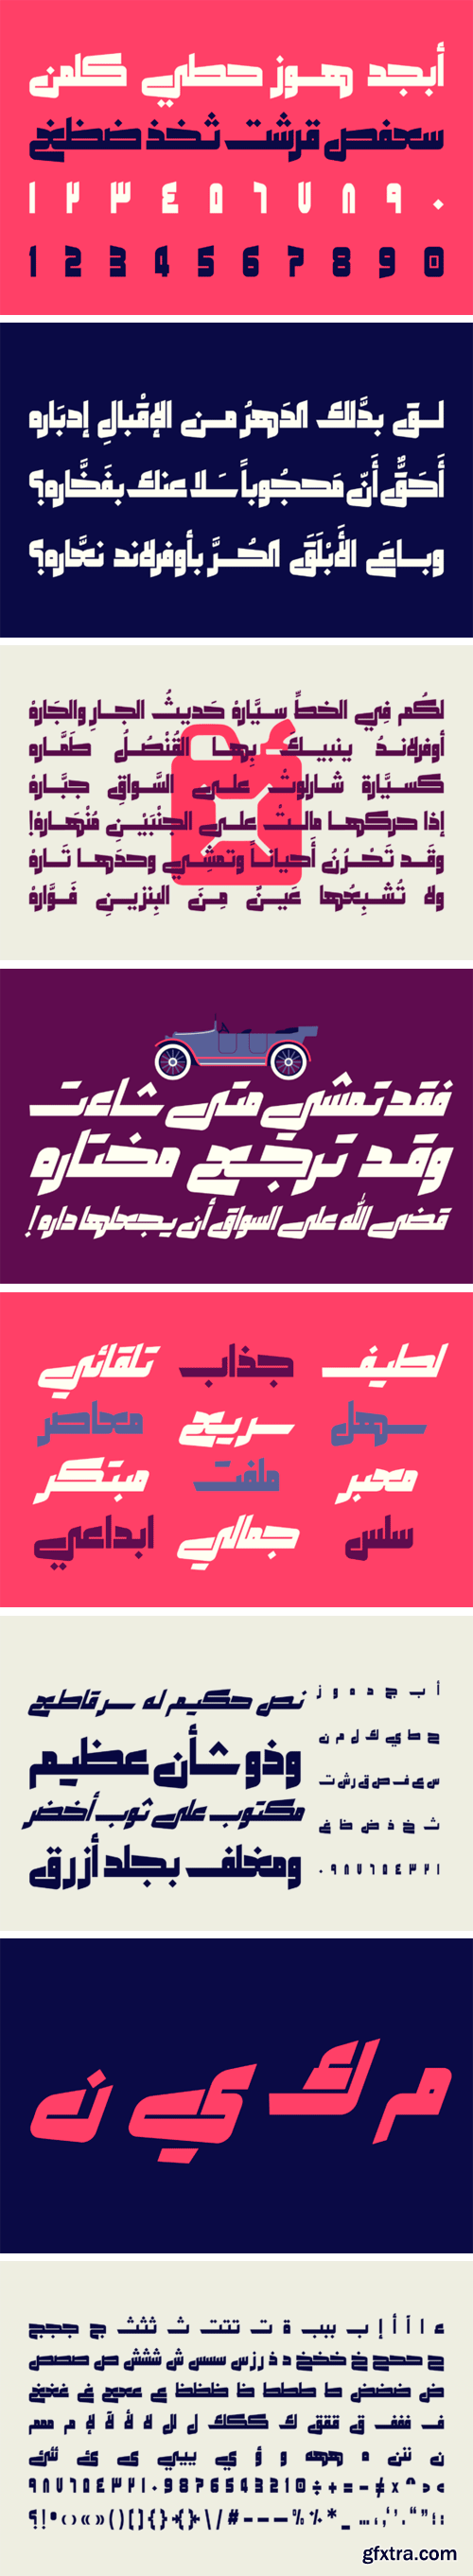 Makeen - Arabic Font